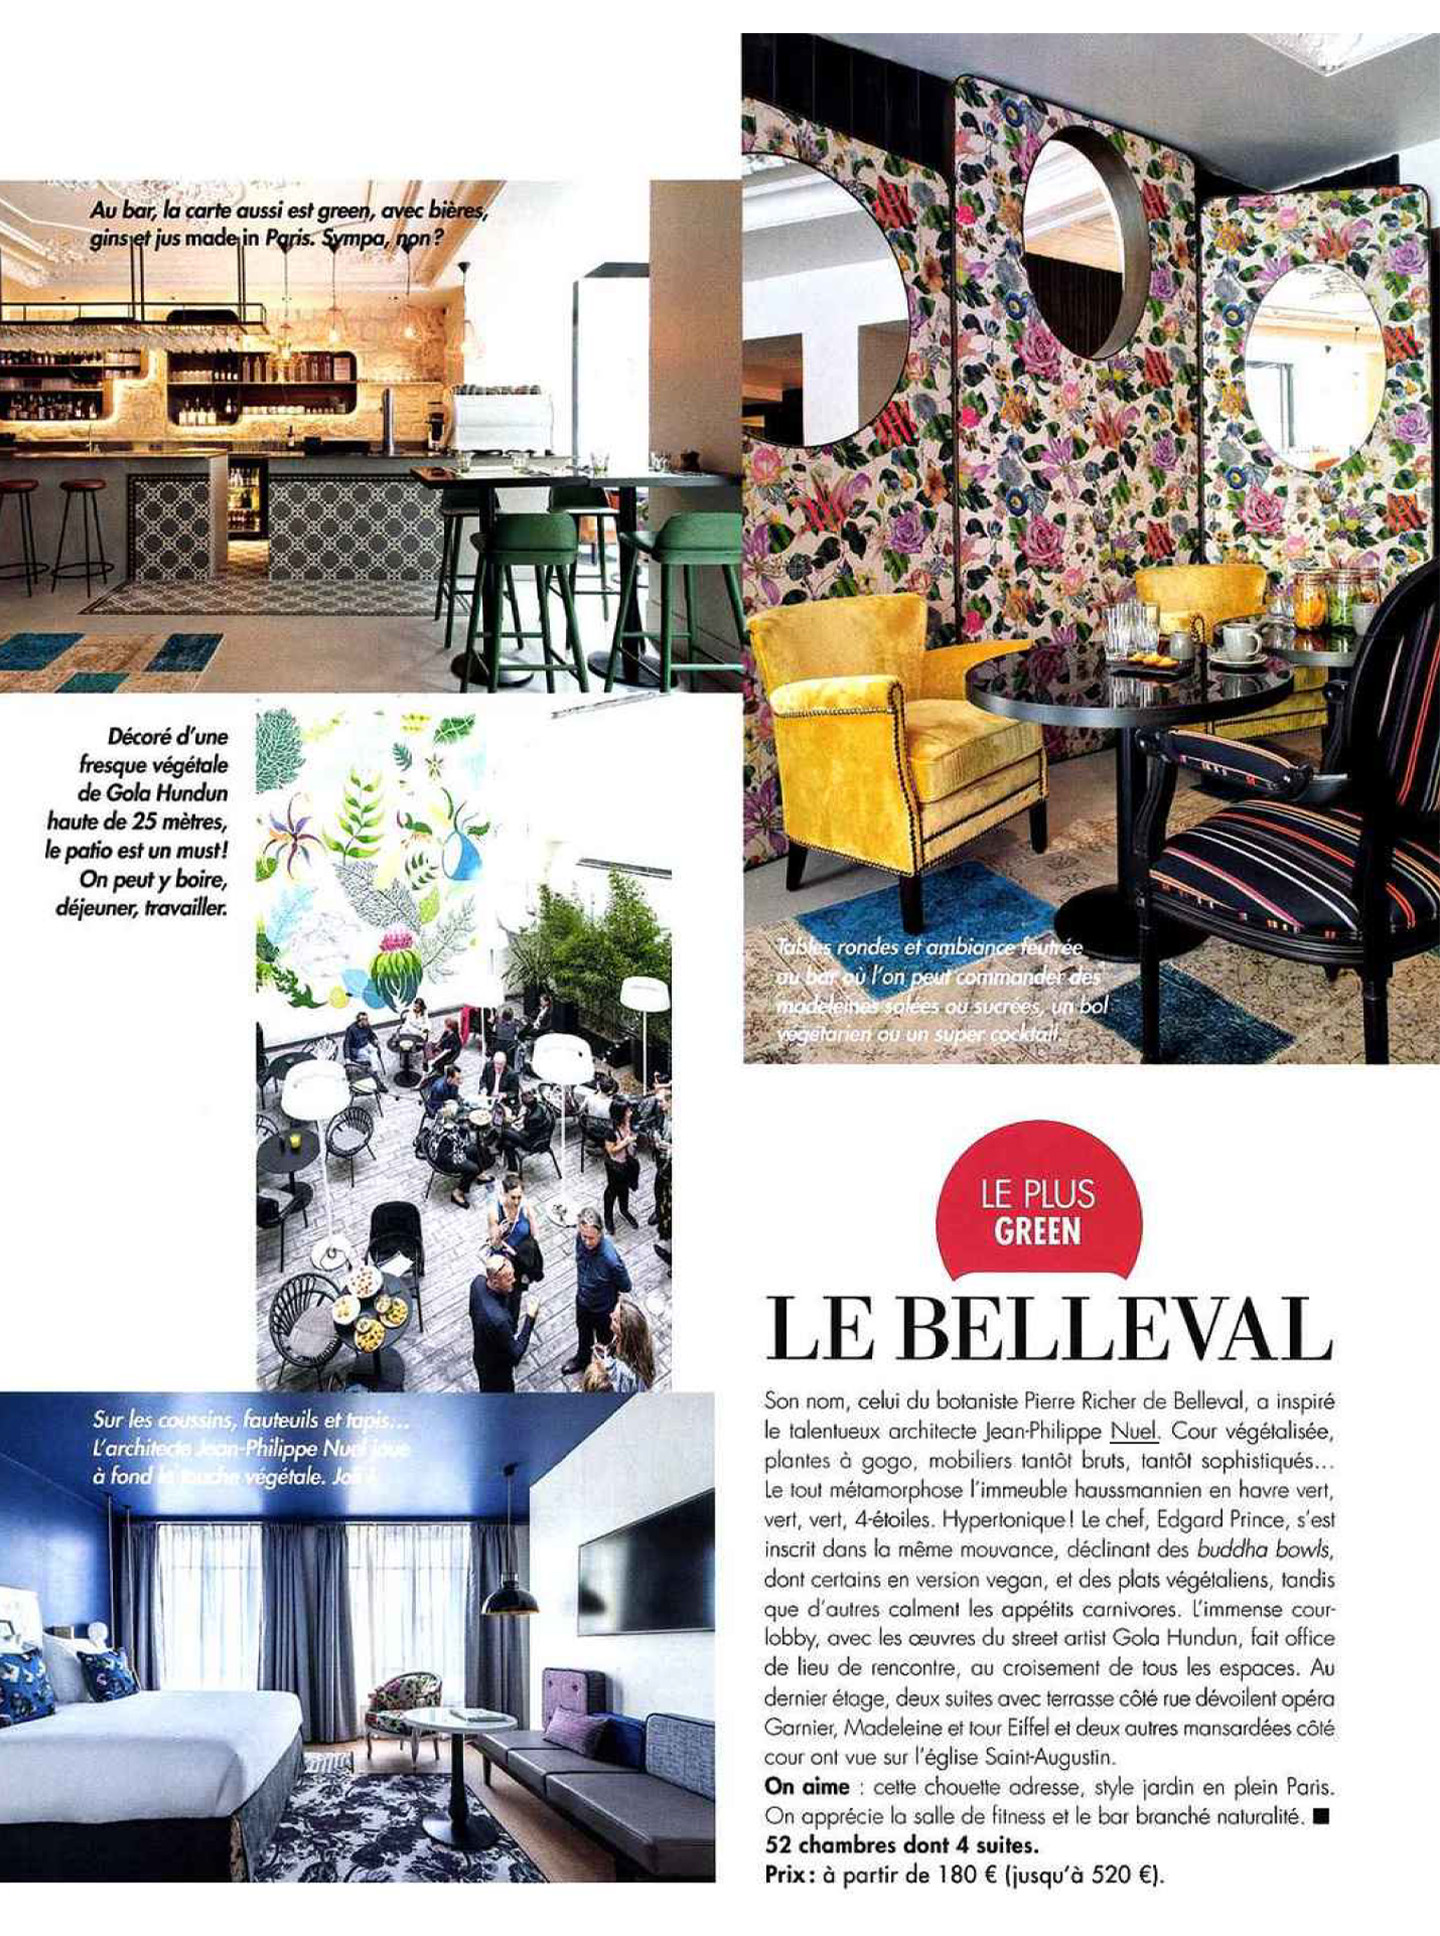 Article sur le belleval réalisé par le studio jean-Philippe Nuel dans le magazine hotel & lodge, nouvel hotel lifestyle, architecture d'intérieur de luxe, paris centre, hotel 4 étoiles français